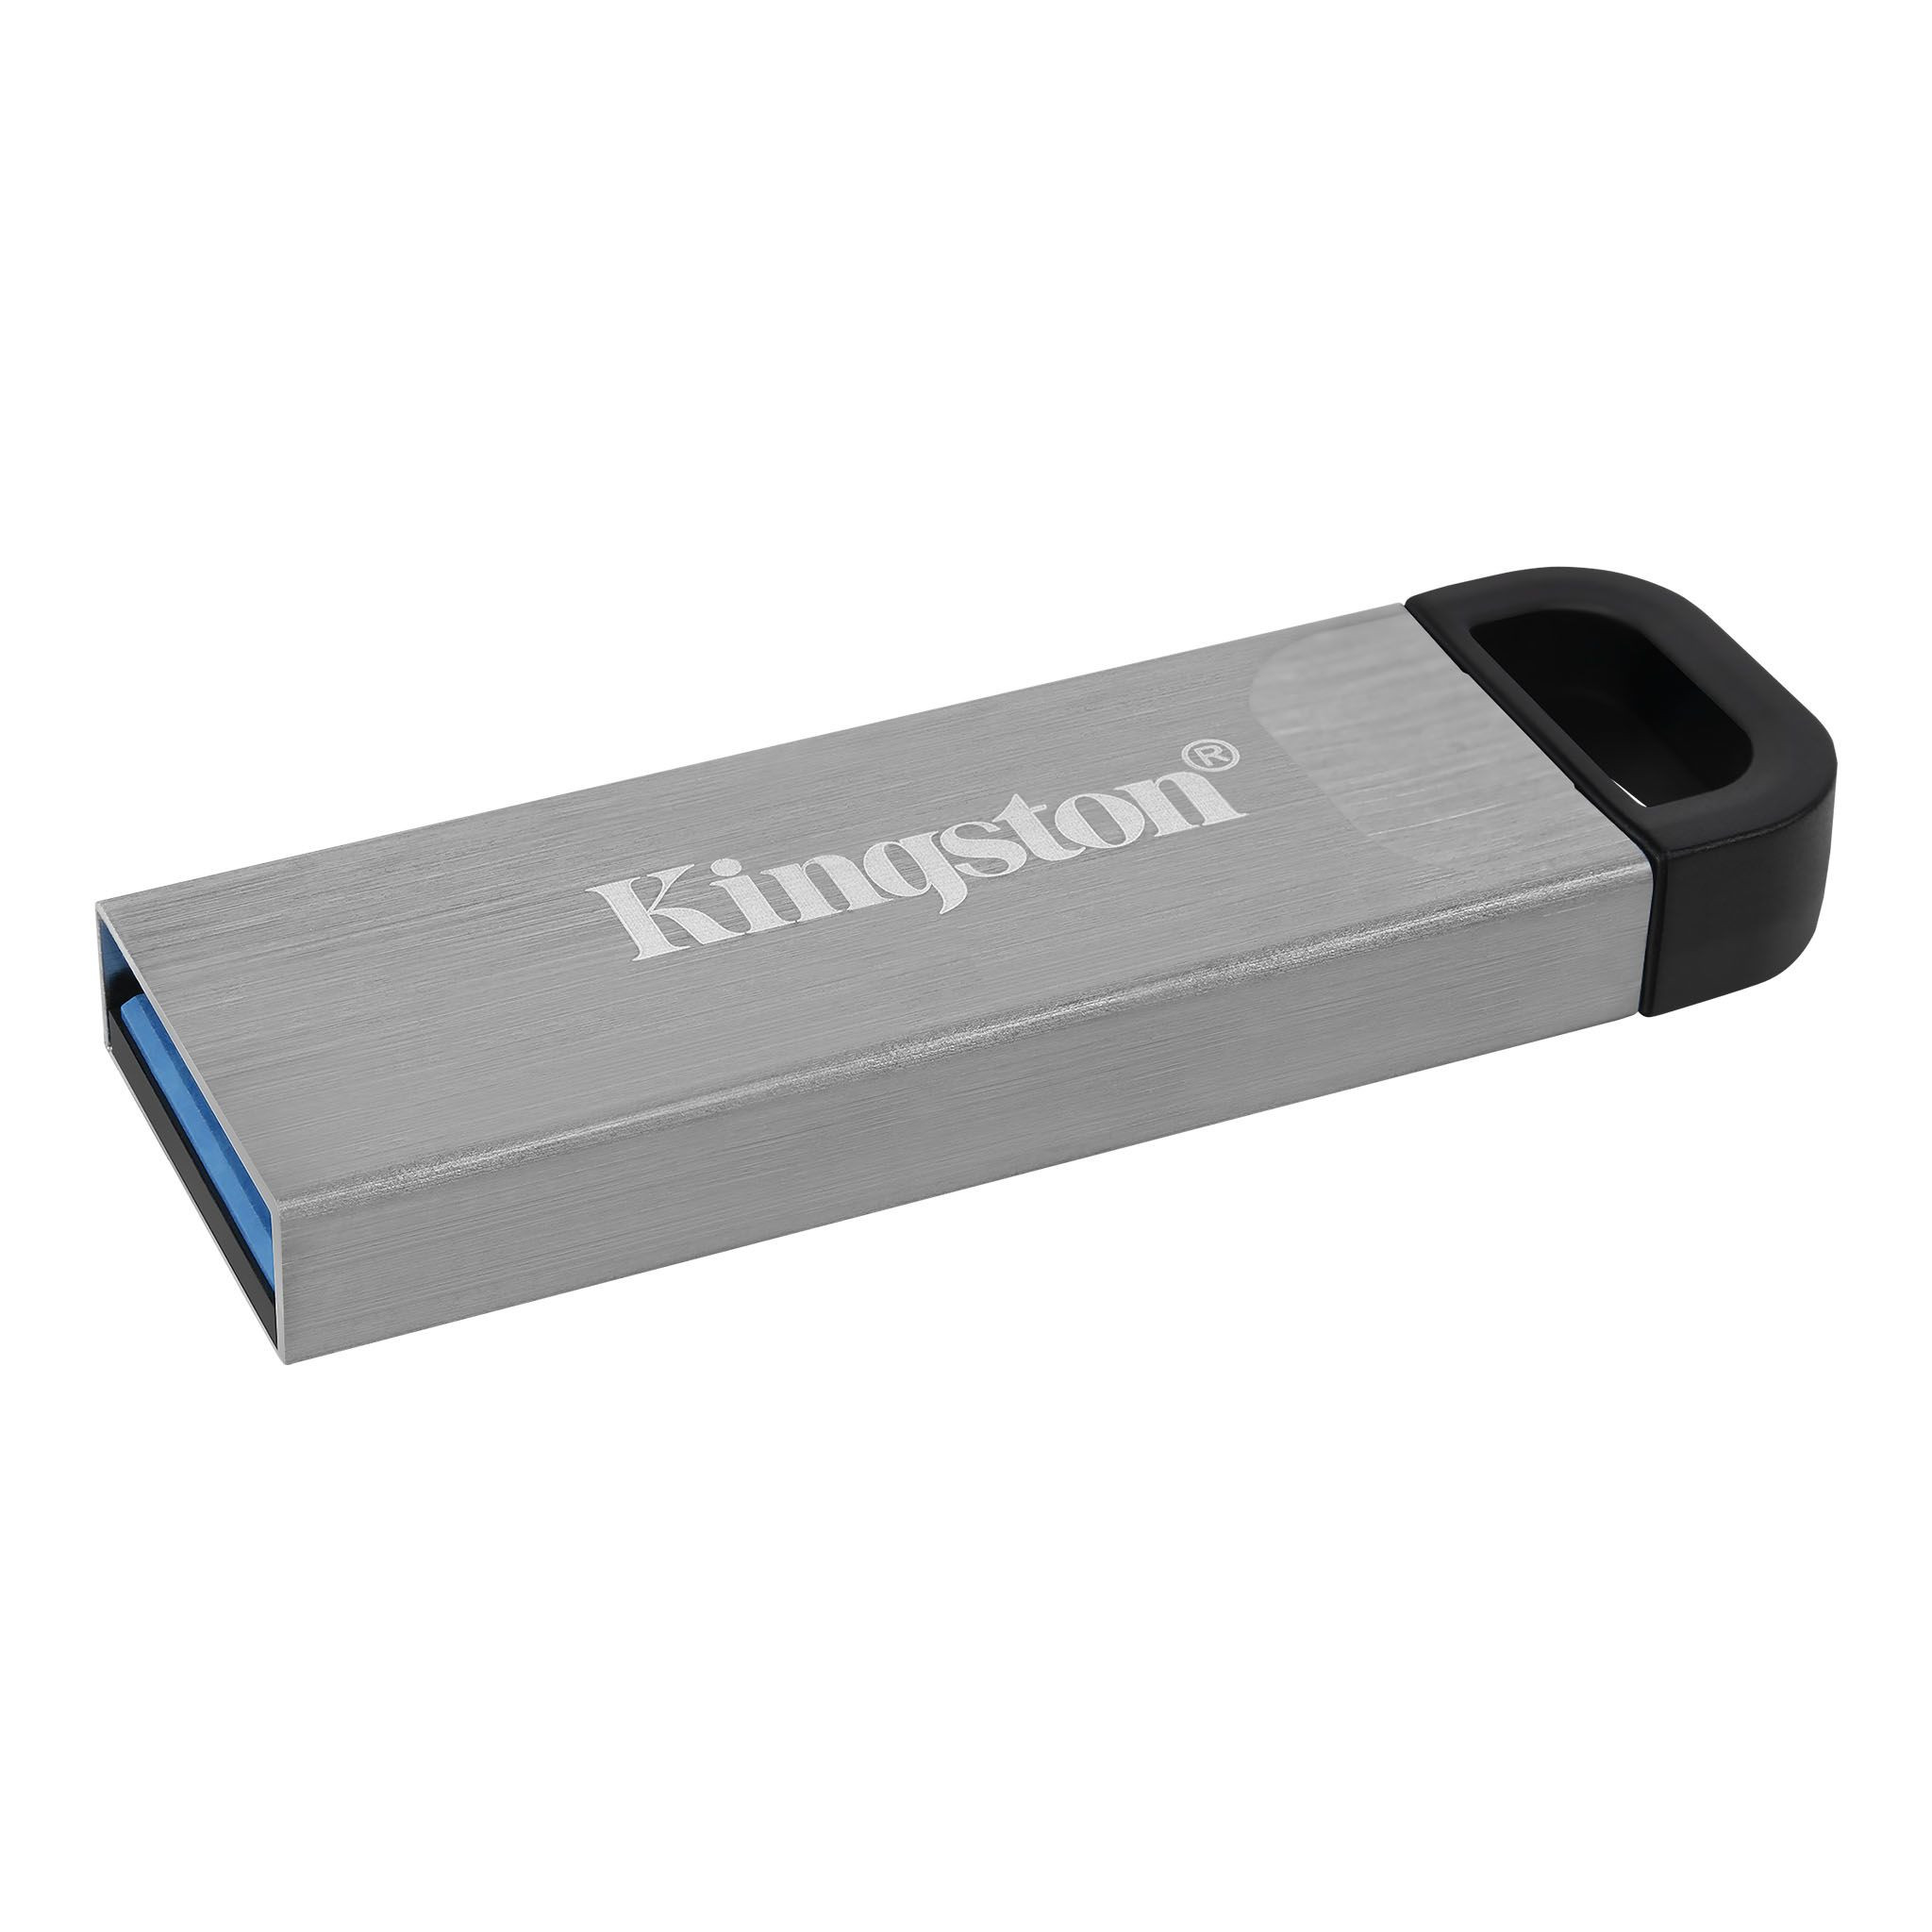 Kingston - DTKN-64GB -   